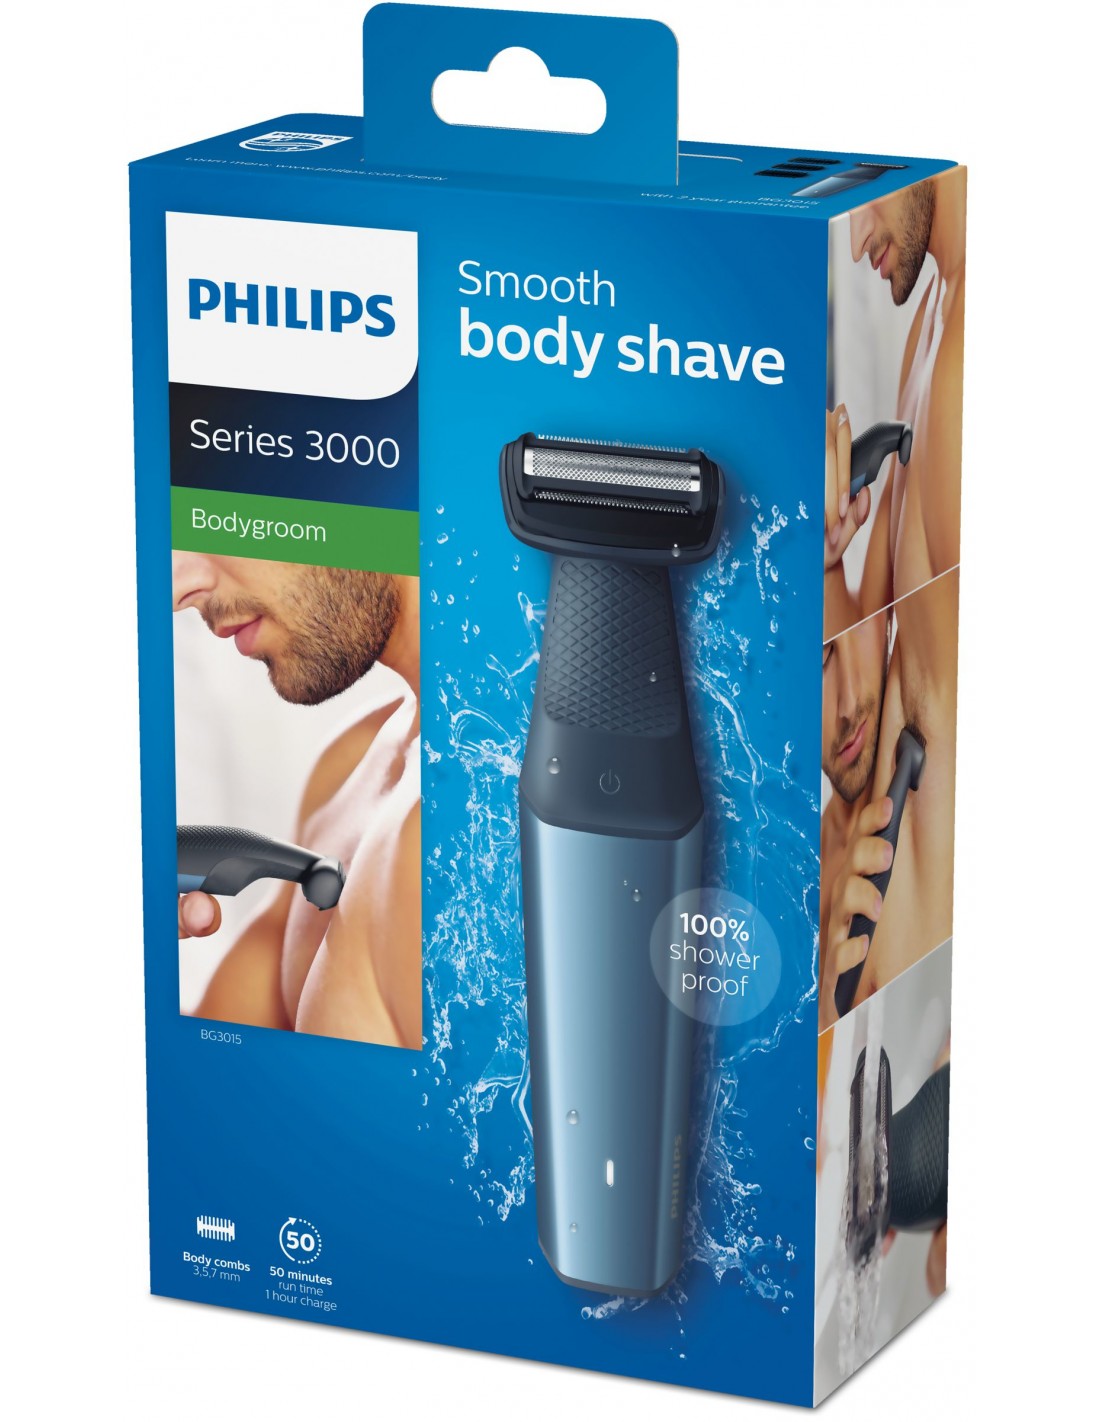 Philips BODYGROOM Series 3000 Rasoio delicato Bodygroom utilizzabile sotto  la doccia